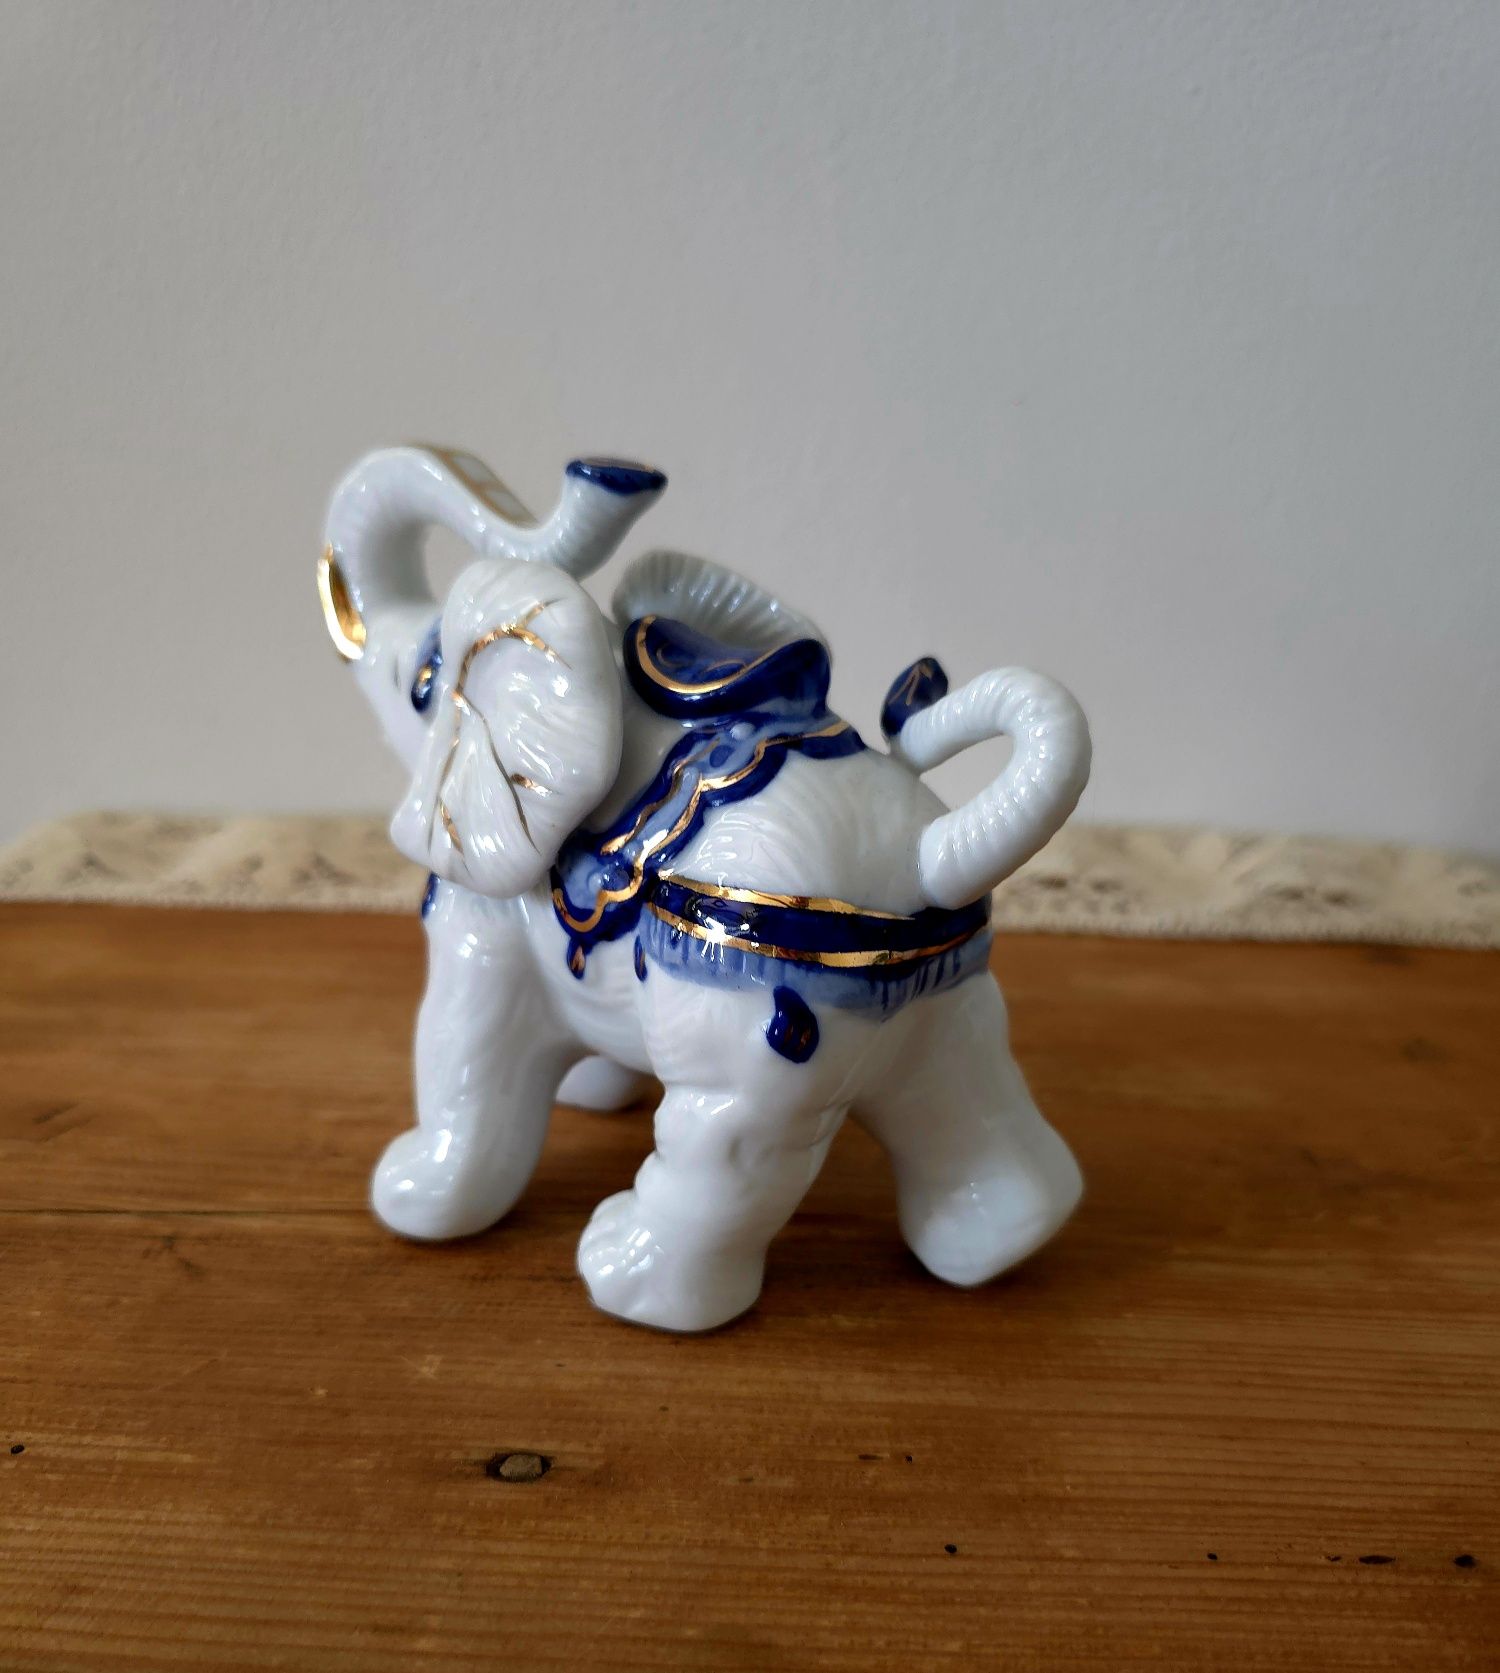 Porcelanowy słonik z uniesioną trąbą na szczęście lata 80'